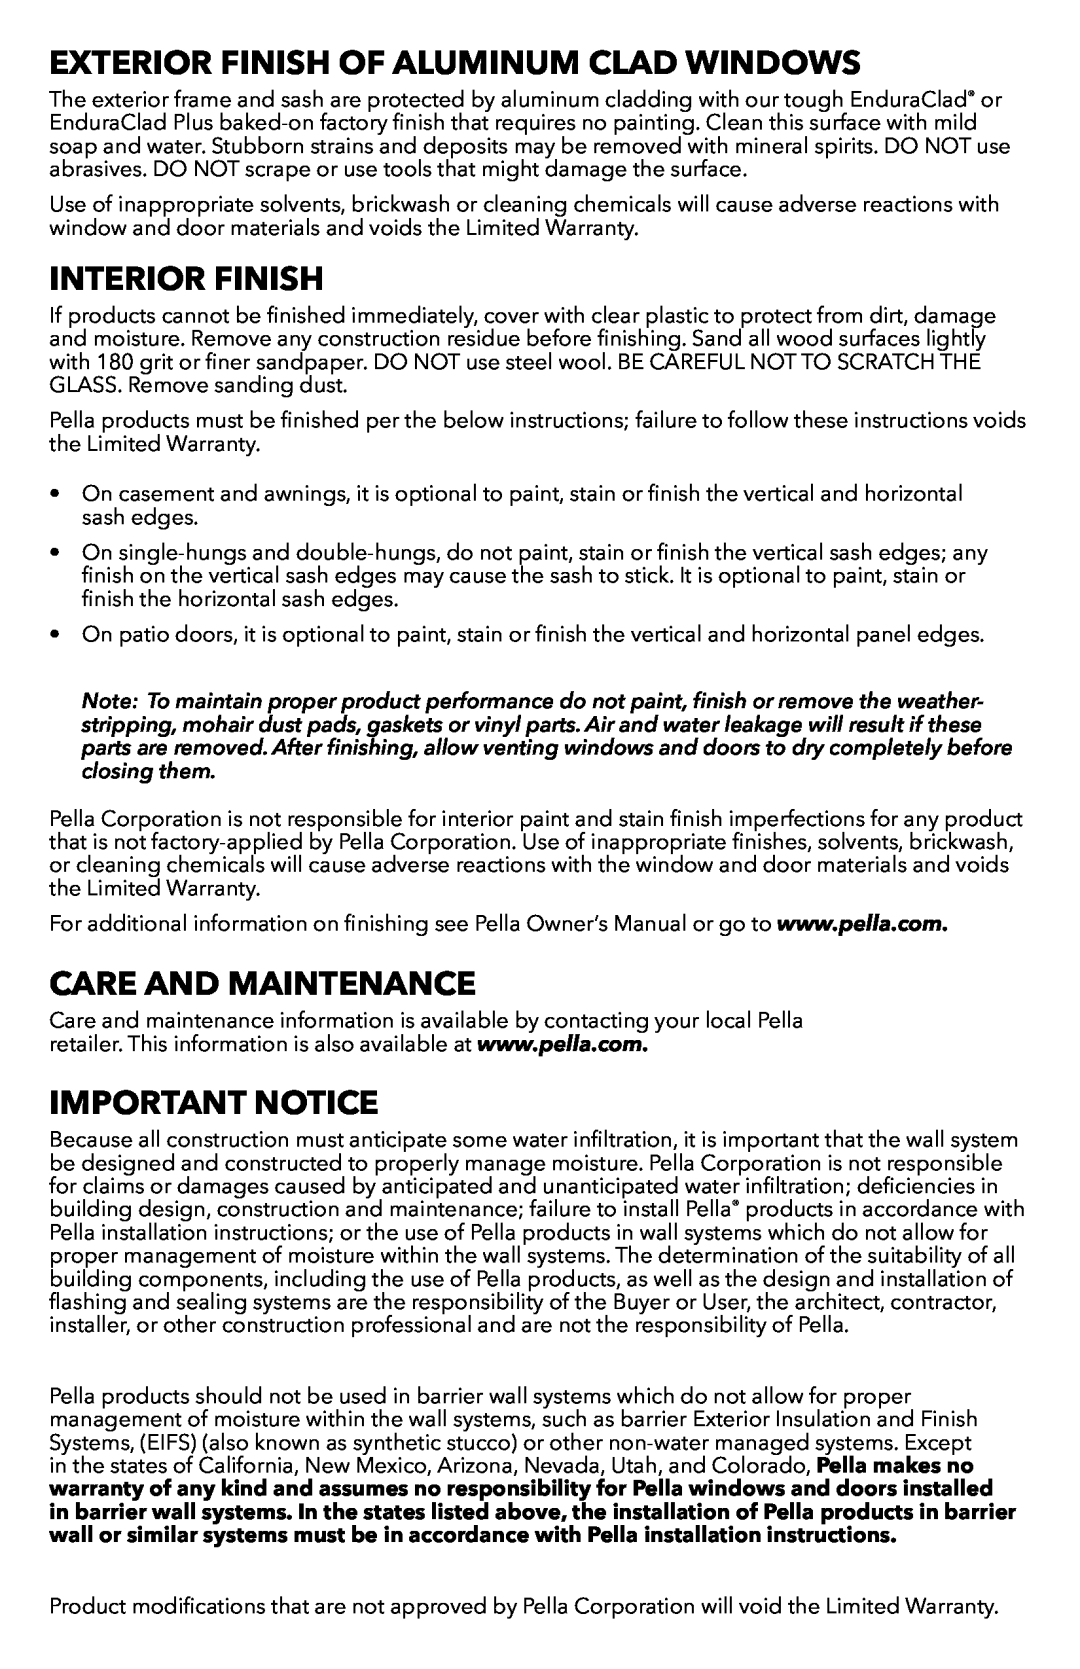 Pella 81CP0101 Exterior Finish Of Aluminum Clad Windows, Interior Finish, Care And Maintenance, Important Notice 